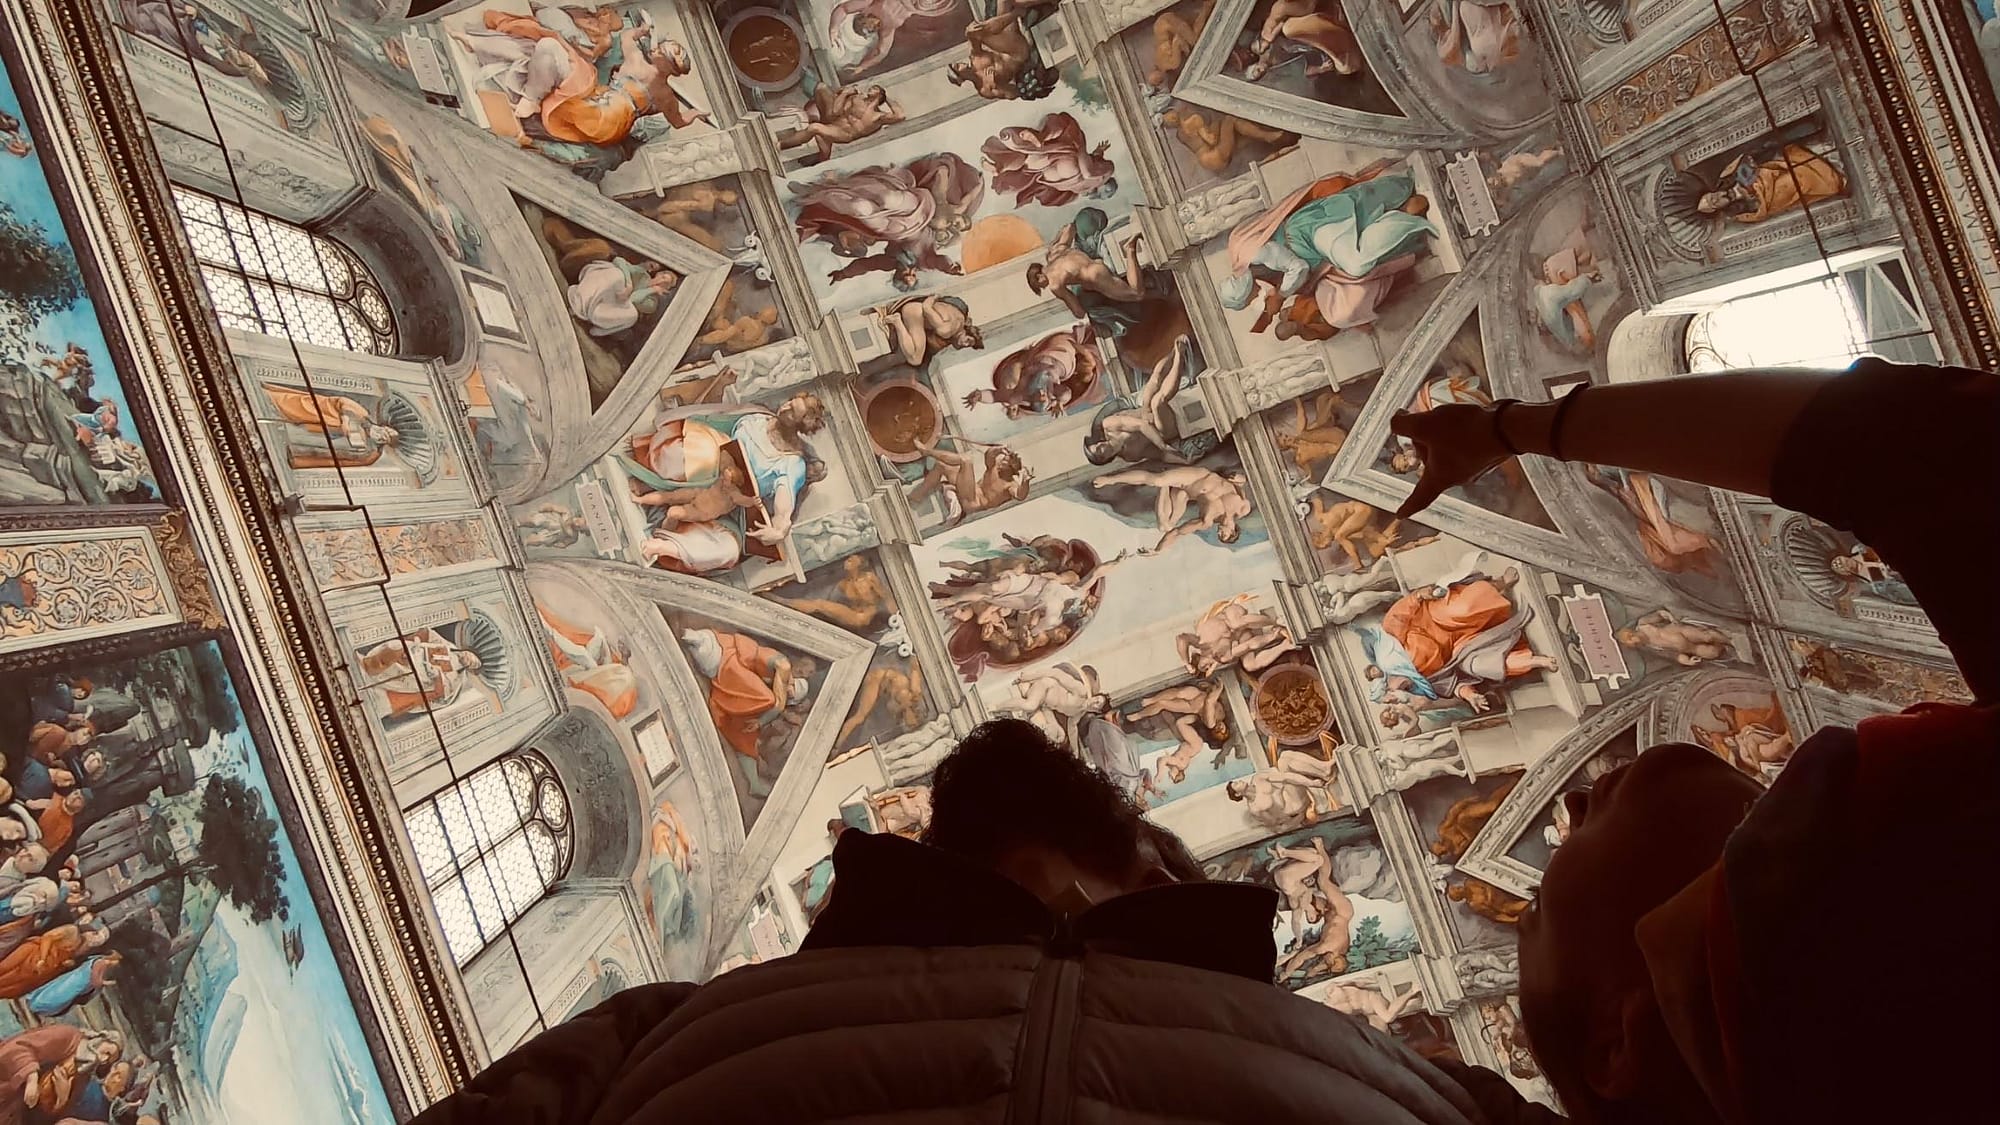 Pintura de Michelangelo, Sistine Chapel (Capilla Sixtina)